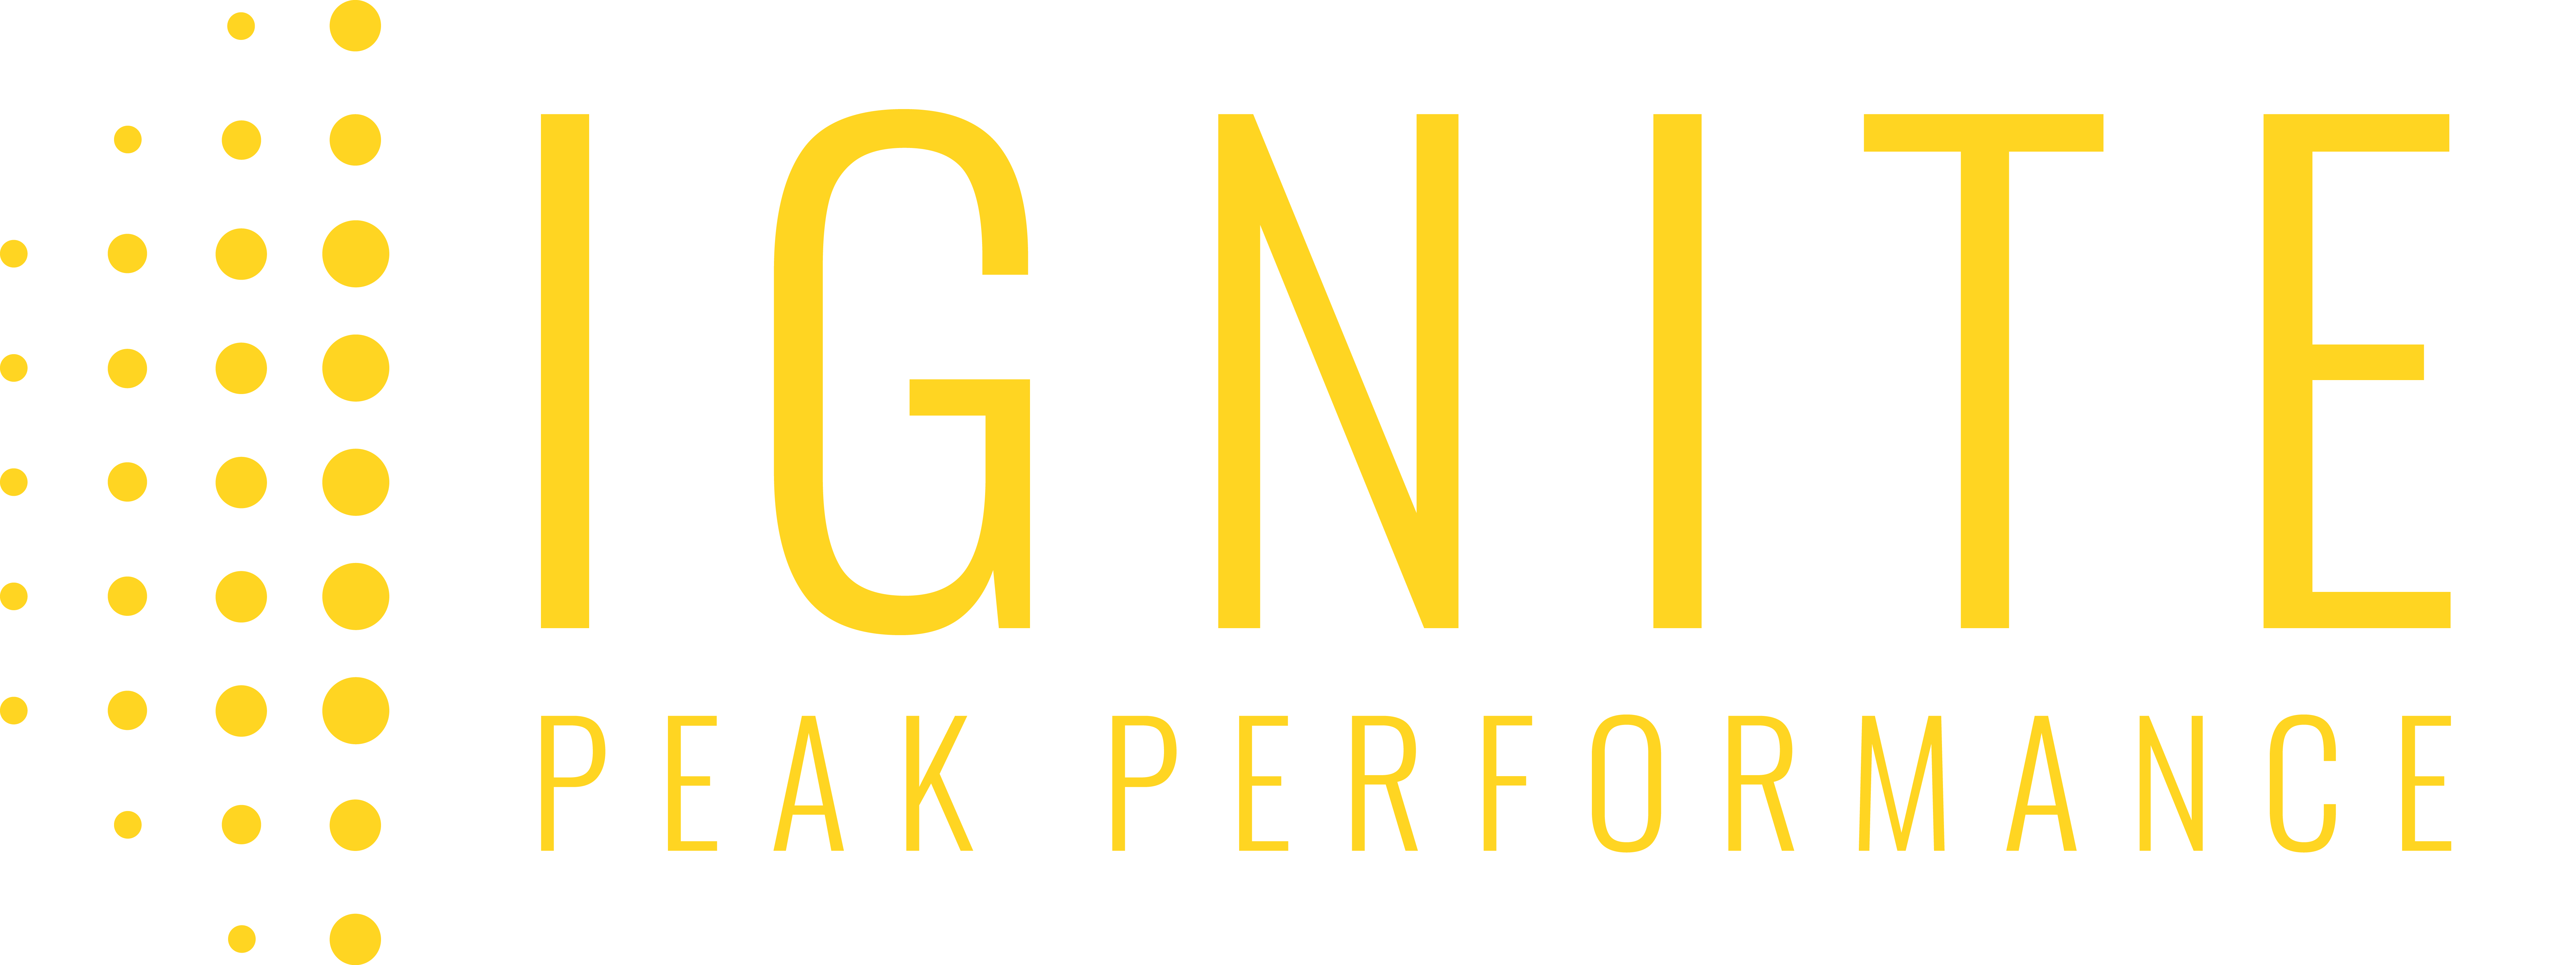 IGNITE Peak Performance